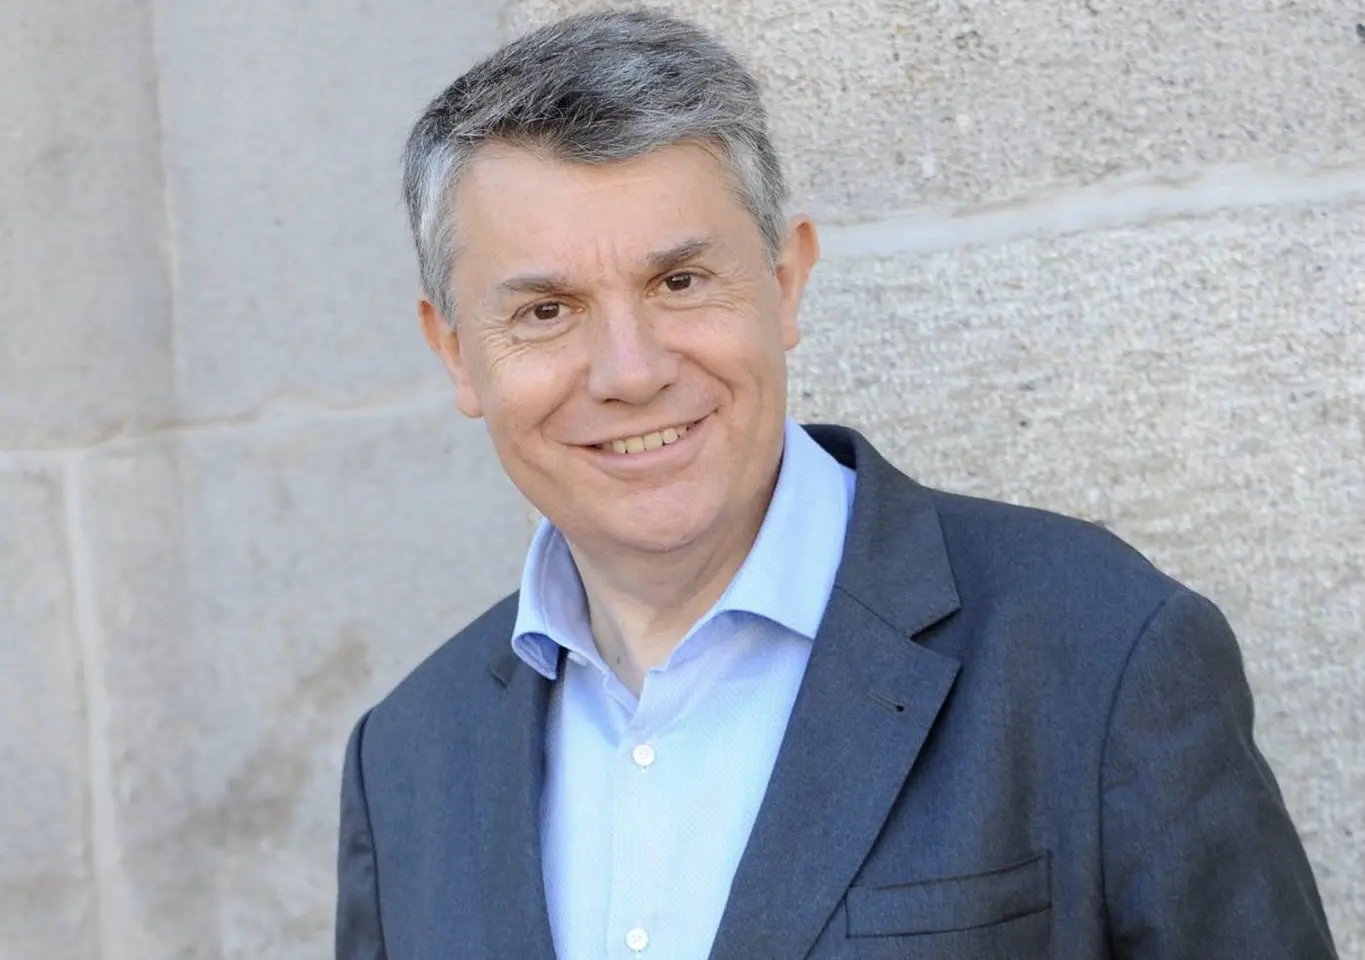 Gilles Artigues